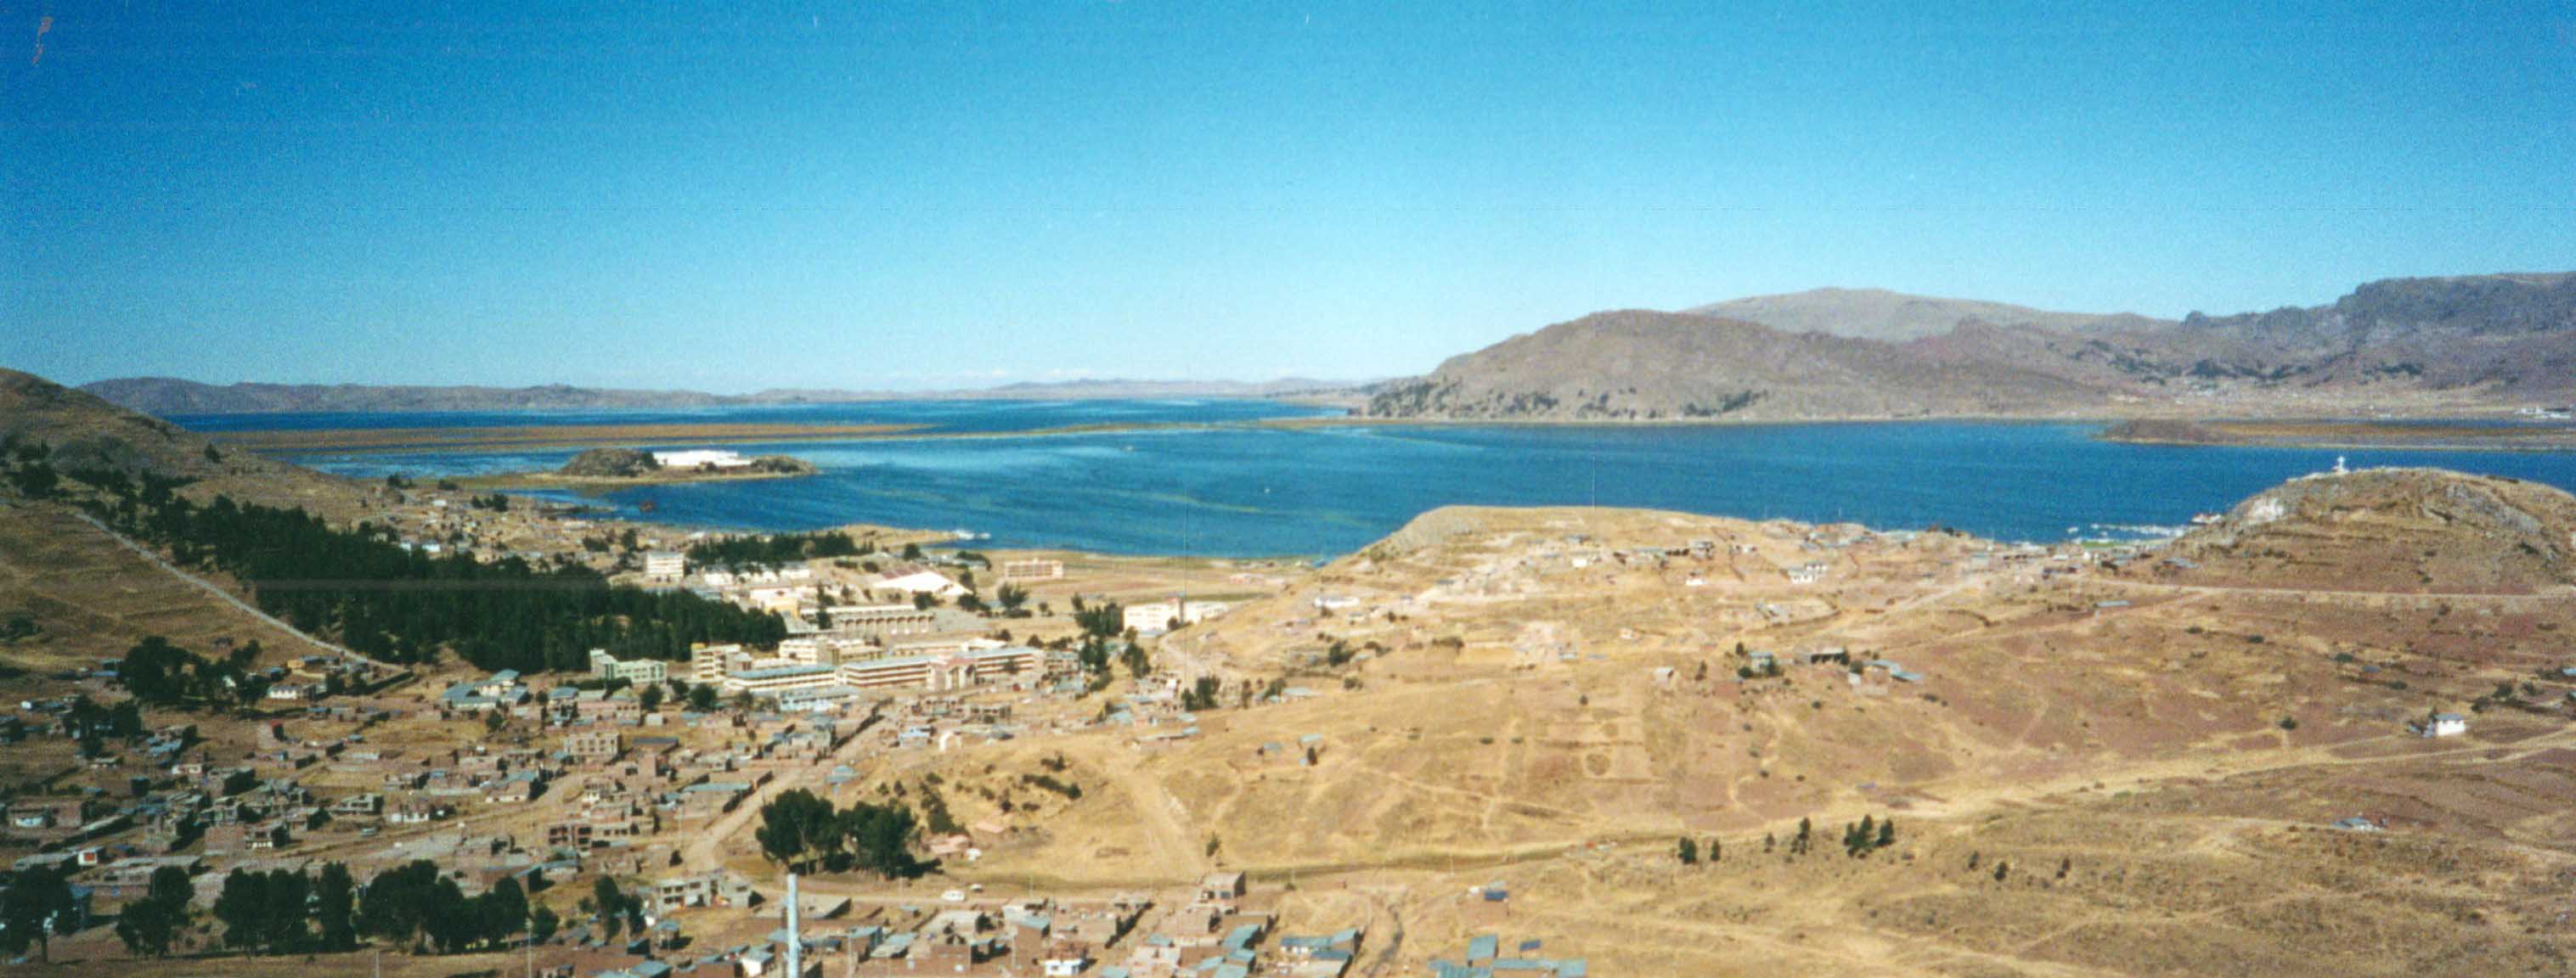 Perù - Titicaca